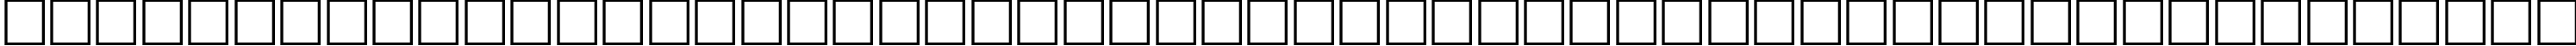 Пример написания шрифтом WP Hebrew David текста на русском